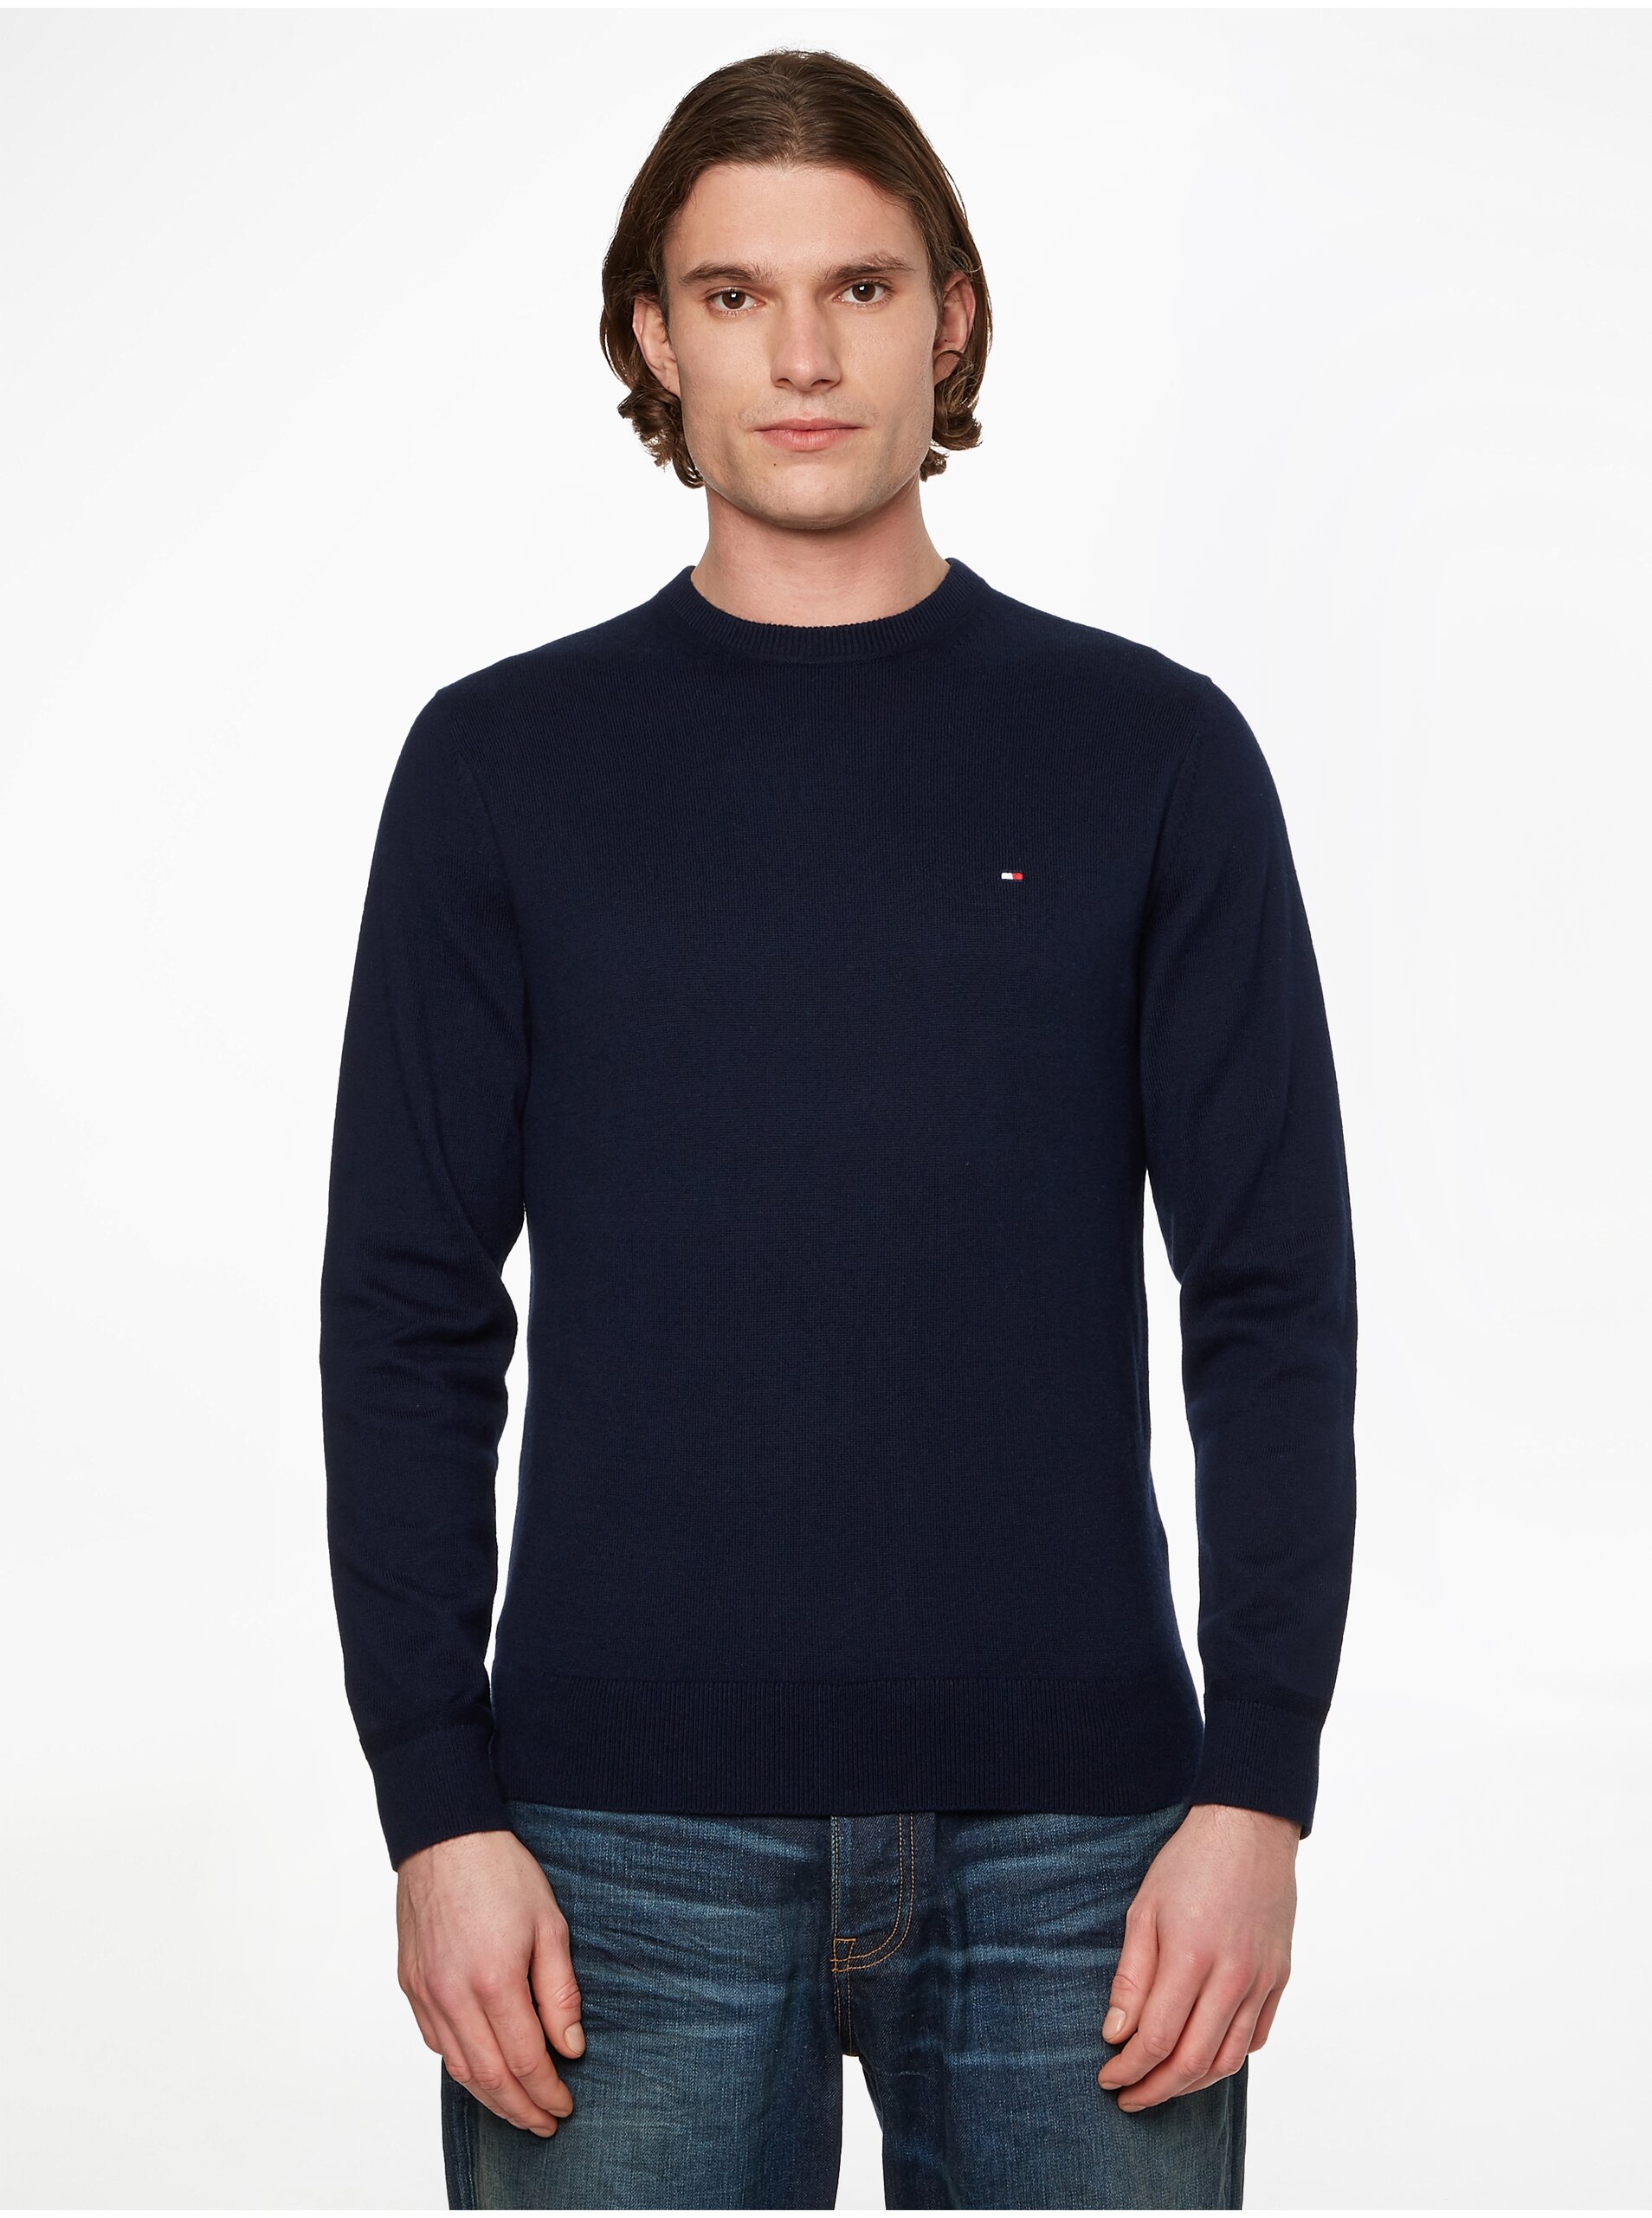 E-shop Tmavě modrý pánský svetr s příměsí kašmíru Tommy Hilfiger